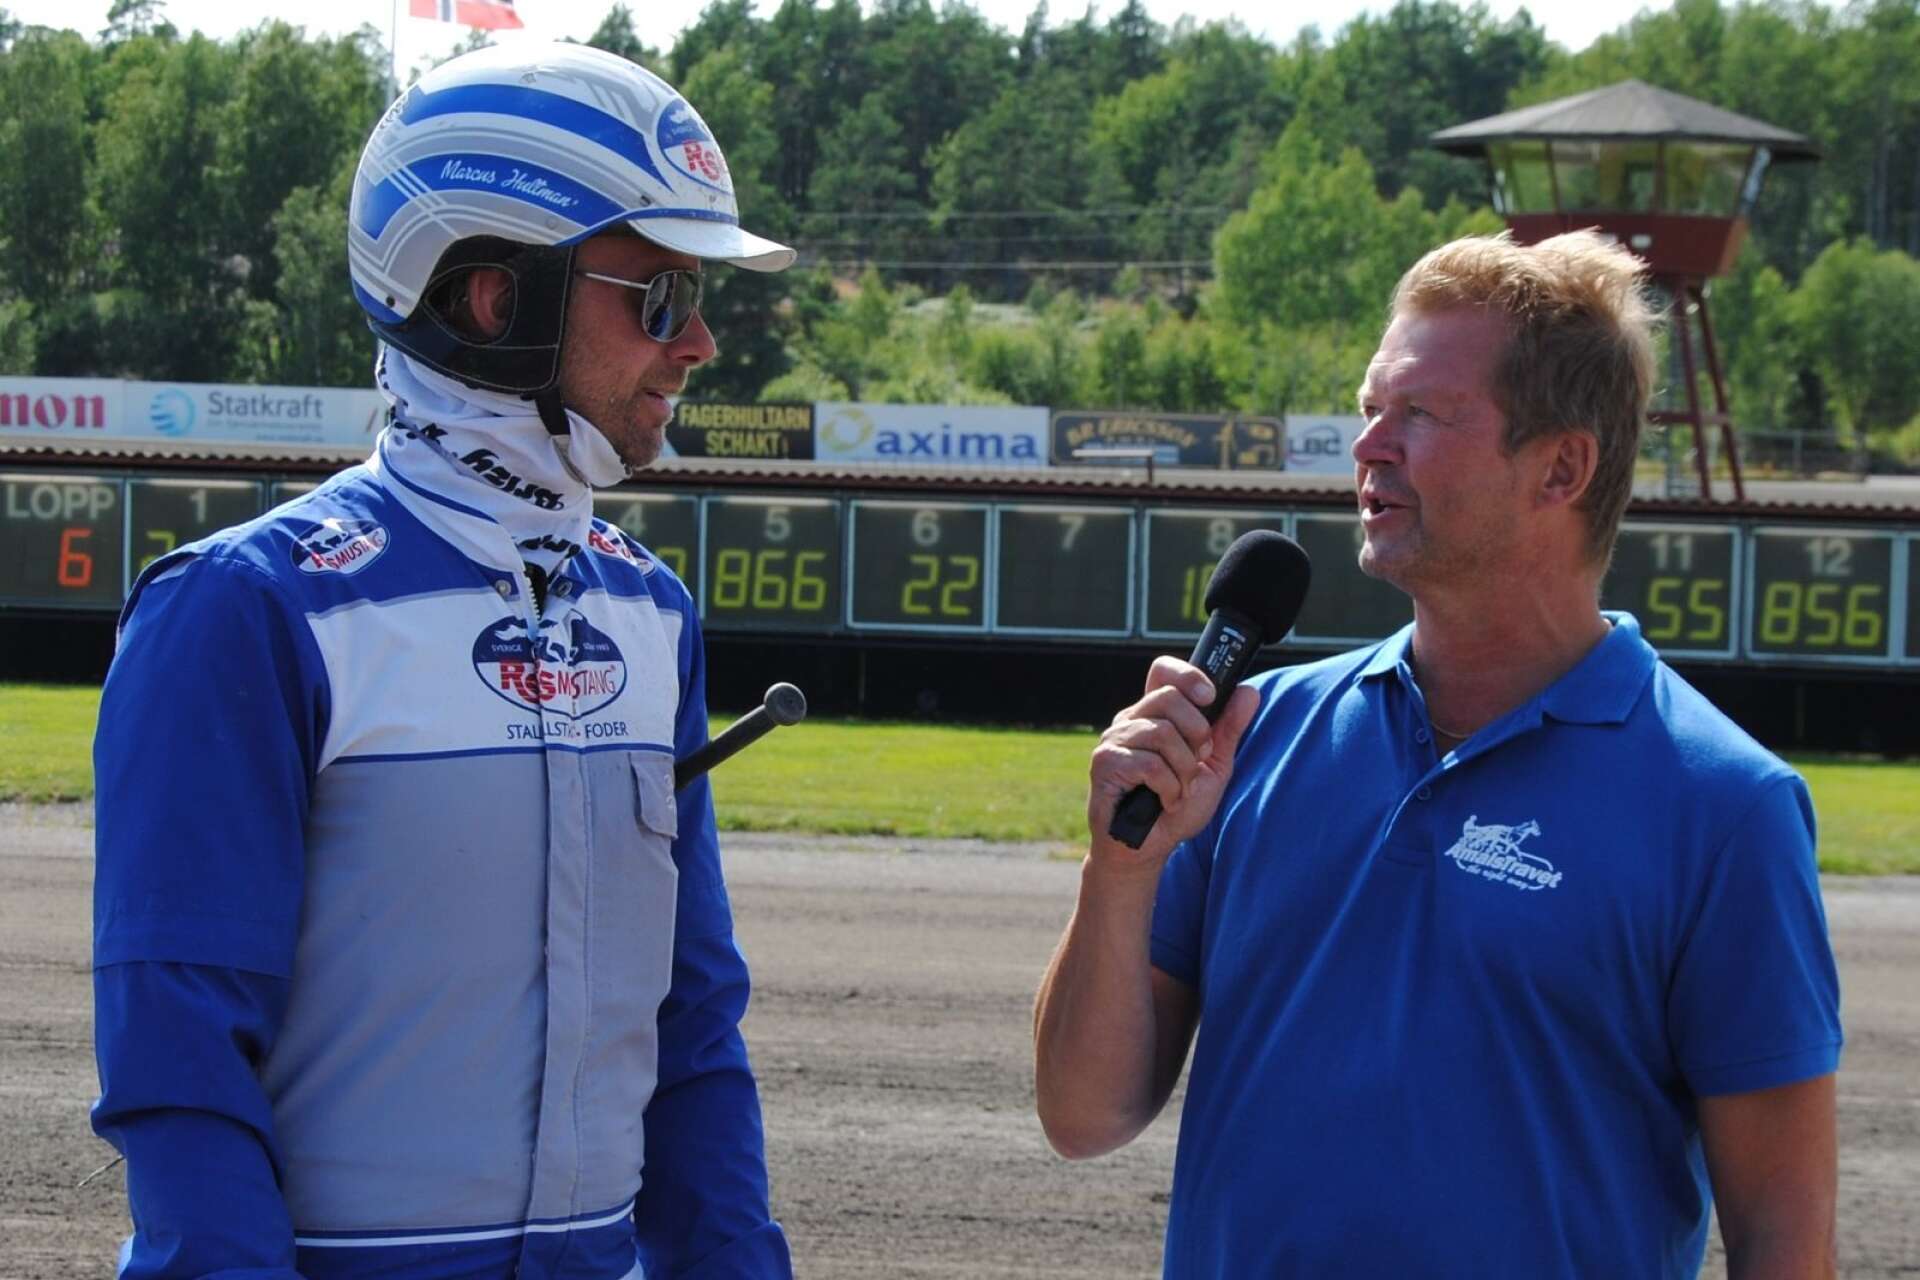 Marcus Hultman intervjuad av Fredrik Bengtsson i samband med en travdag på Åmålstravet.